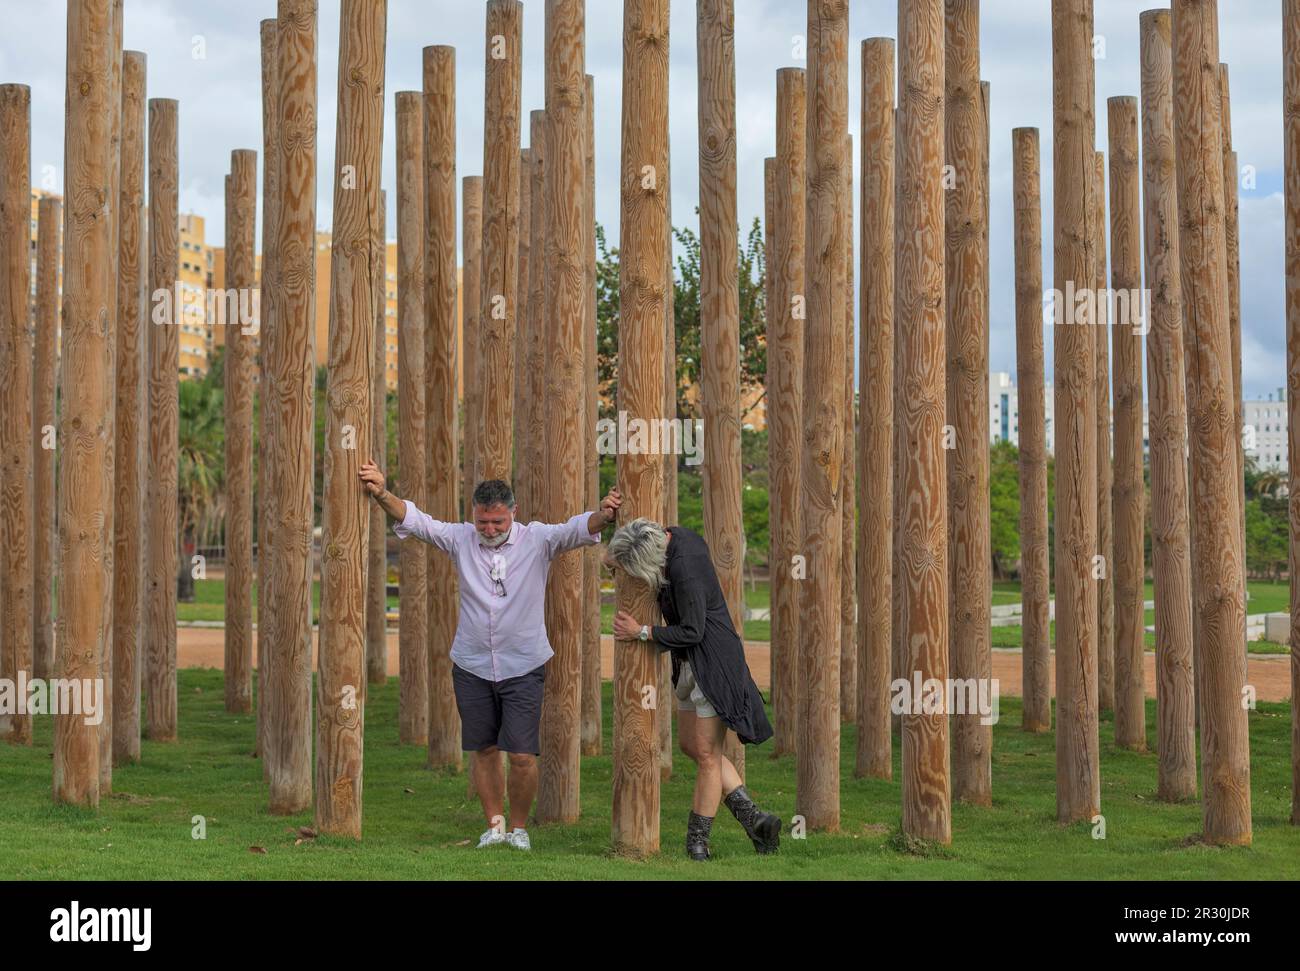 Una coppia di mezza età gioca tra pali decorativi in legno in un giardino. Appoggia le mani sui pali, abbraccia un palo. Foto Stock